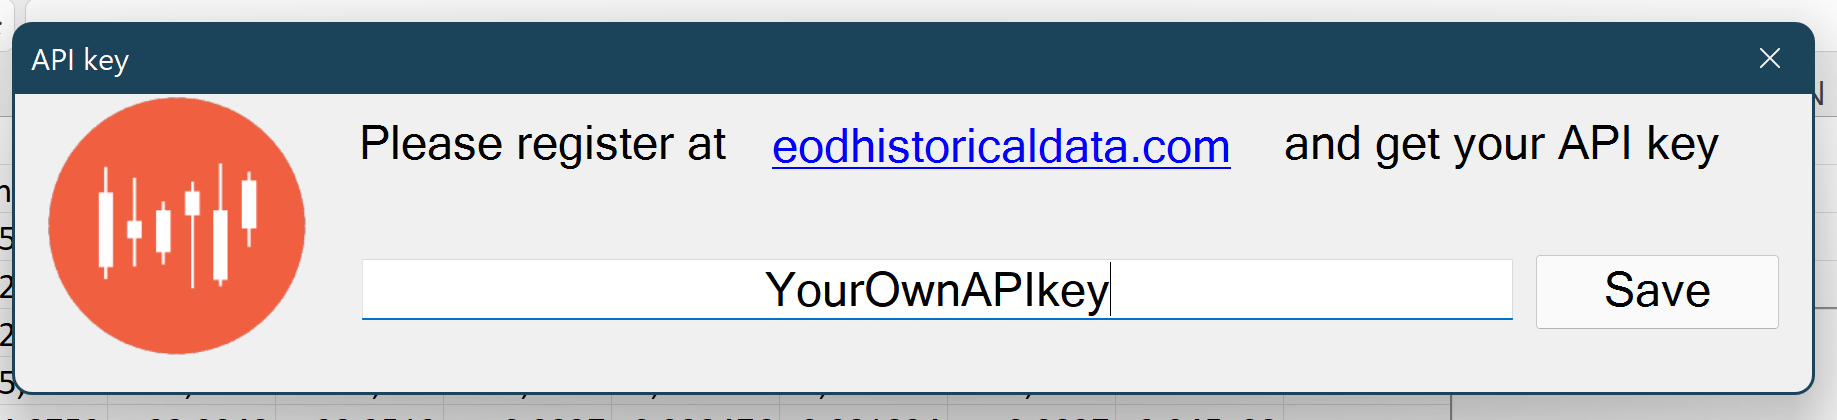 API key input form